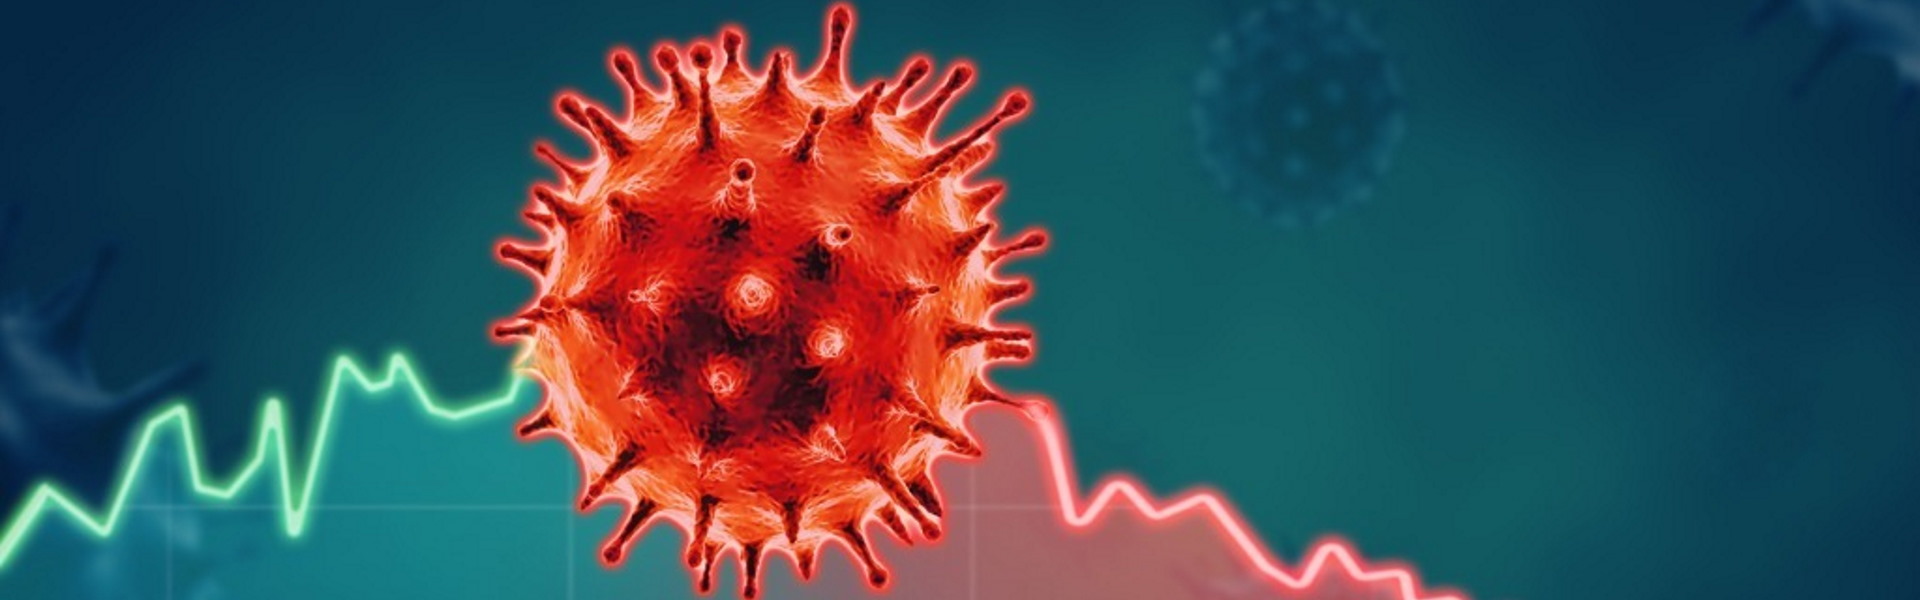 #laculturanonsiferma – Quanto spendono gli altri paesi per l’emergenza coronavirus?